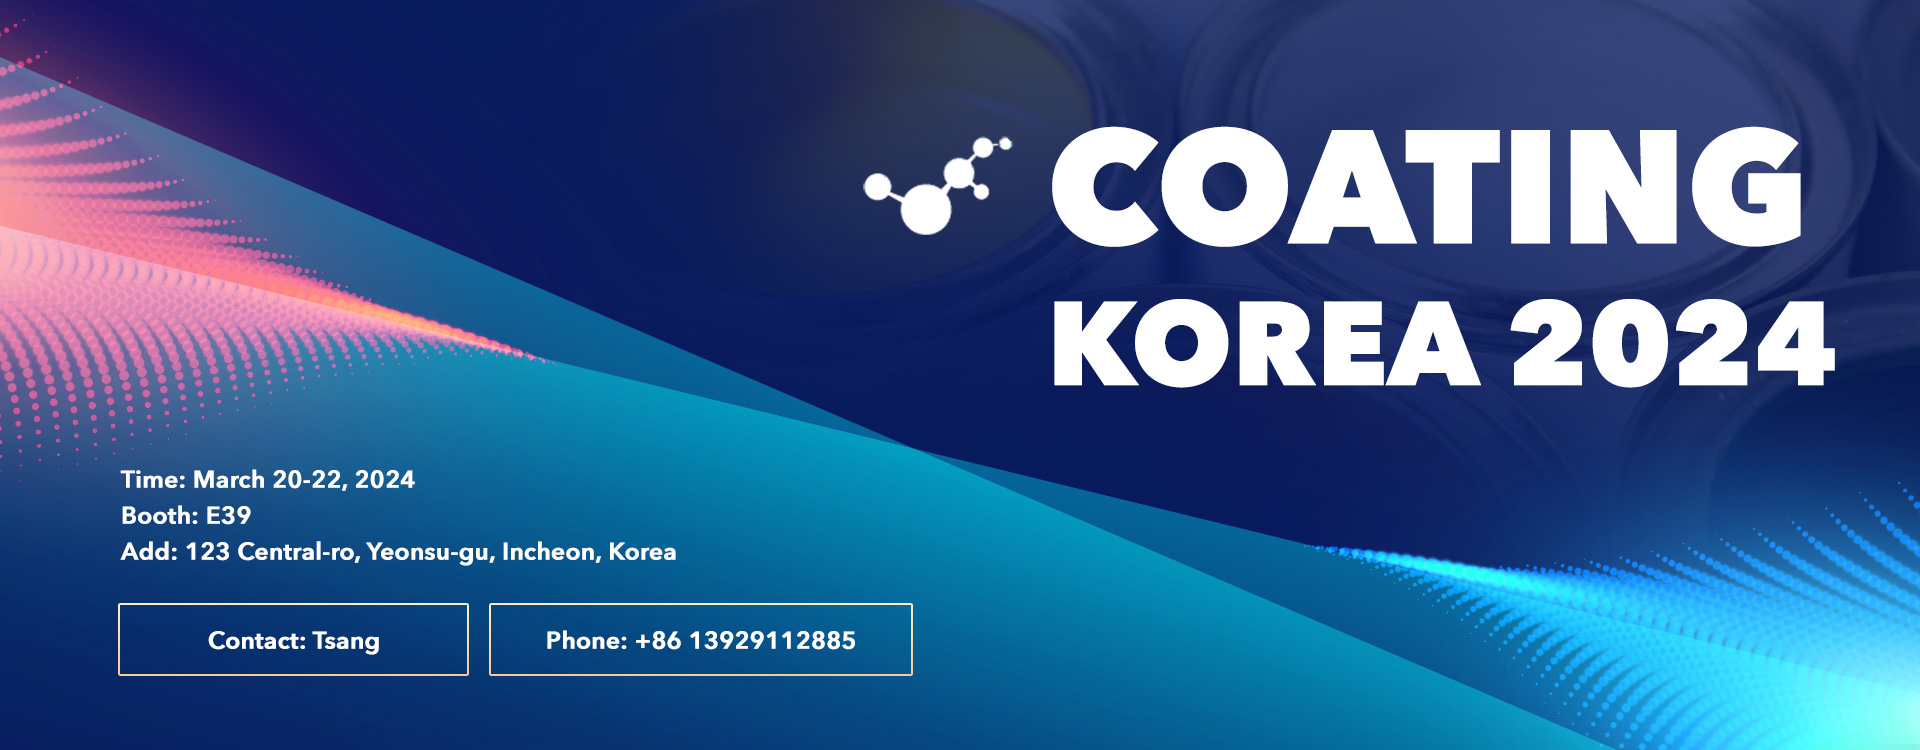 Coating Korea 2024-Polima PES